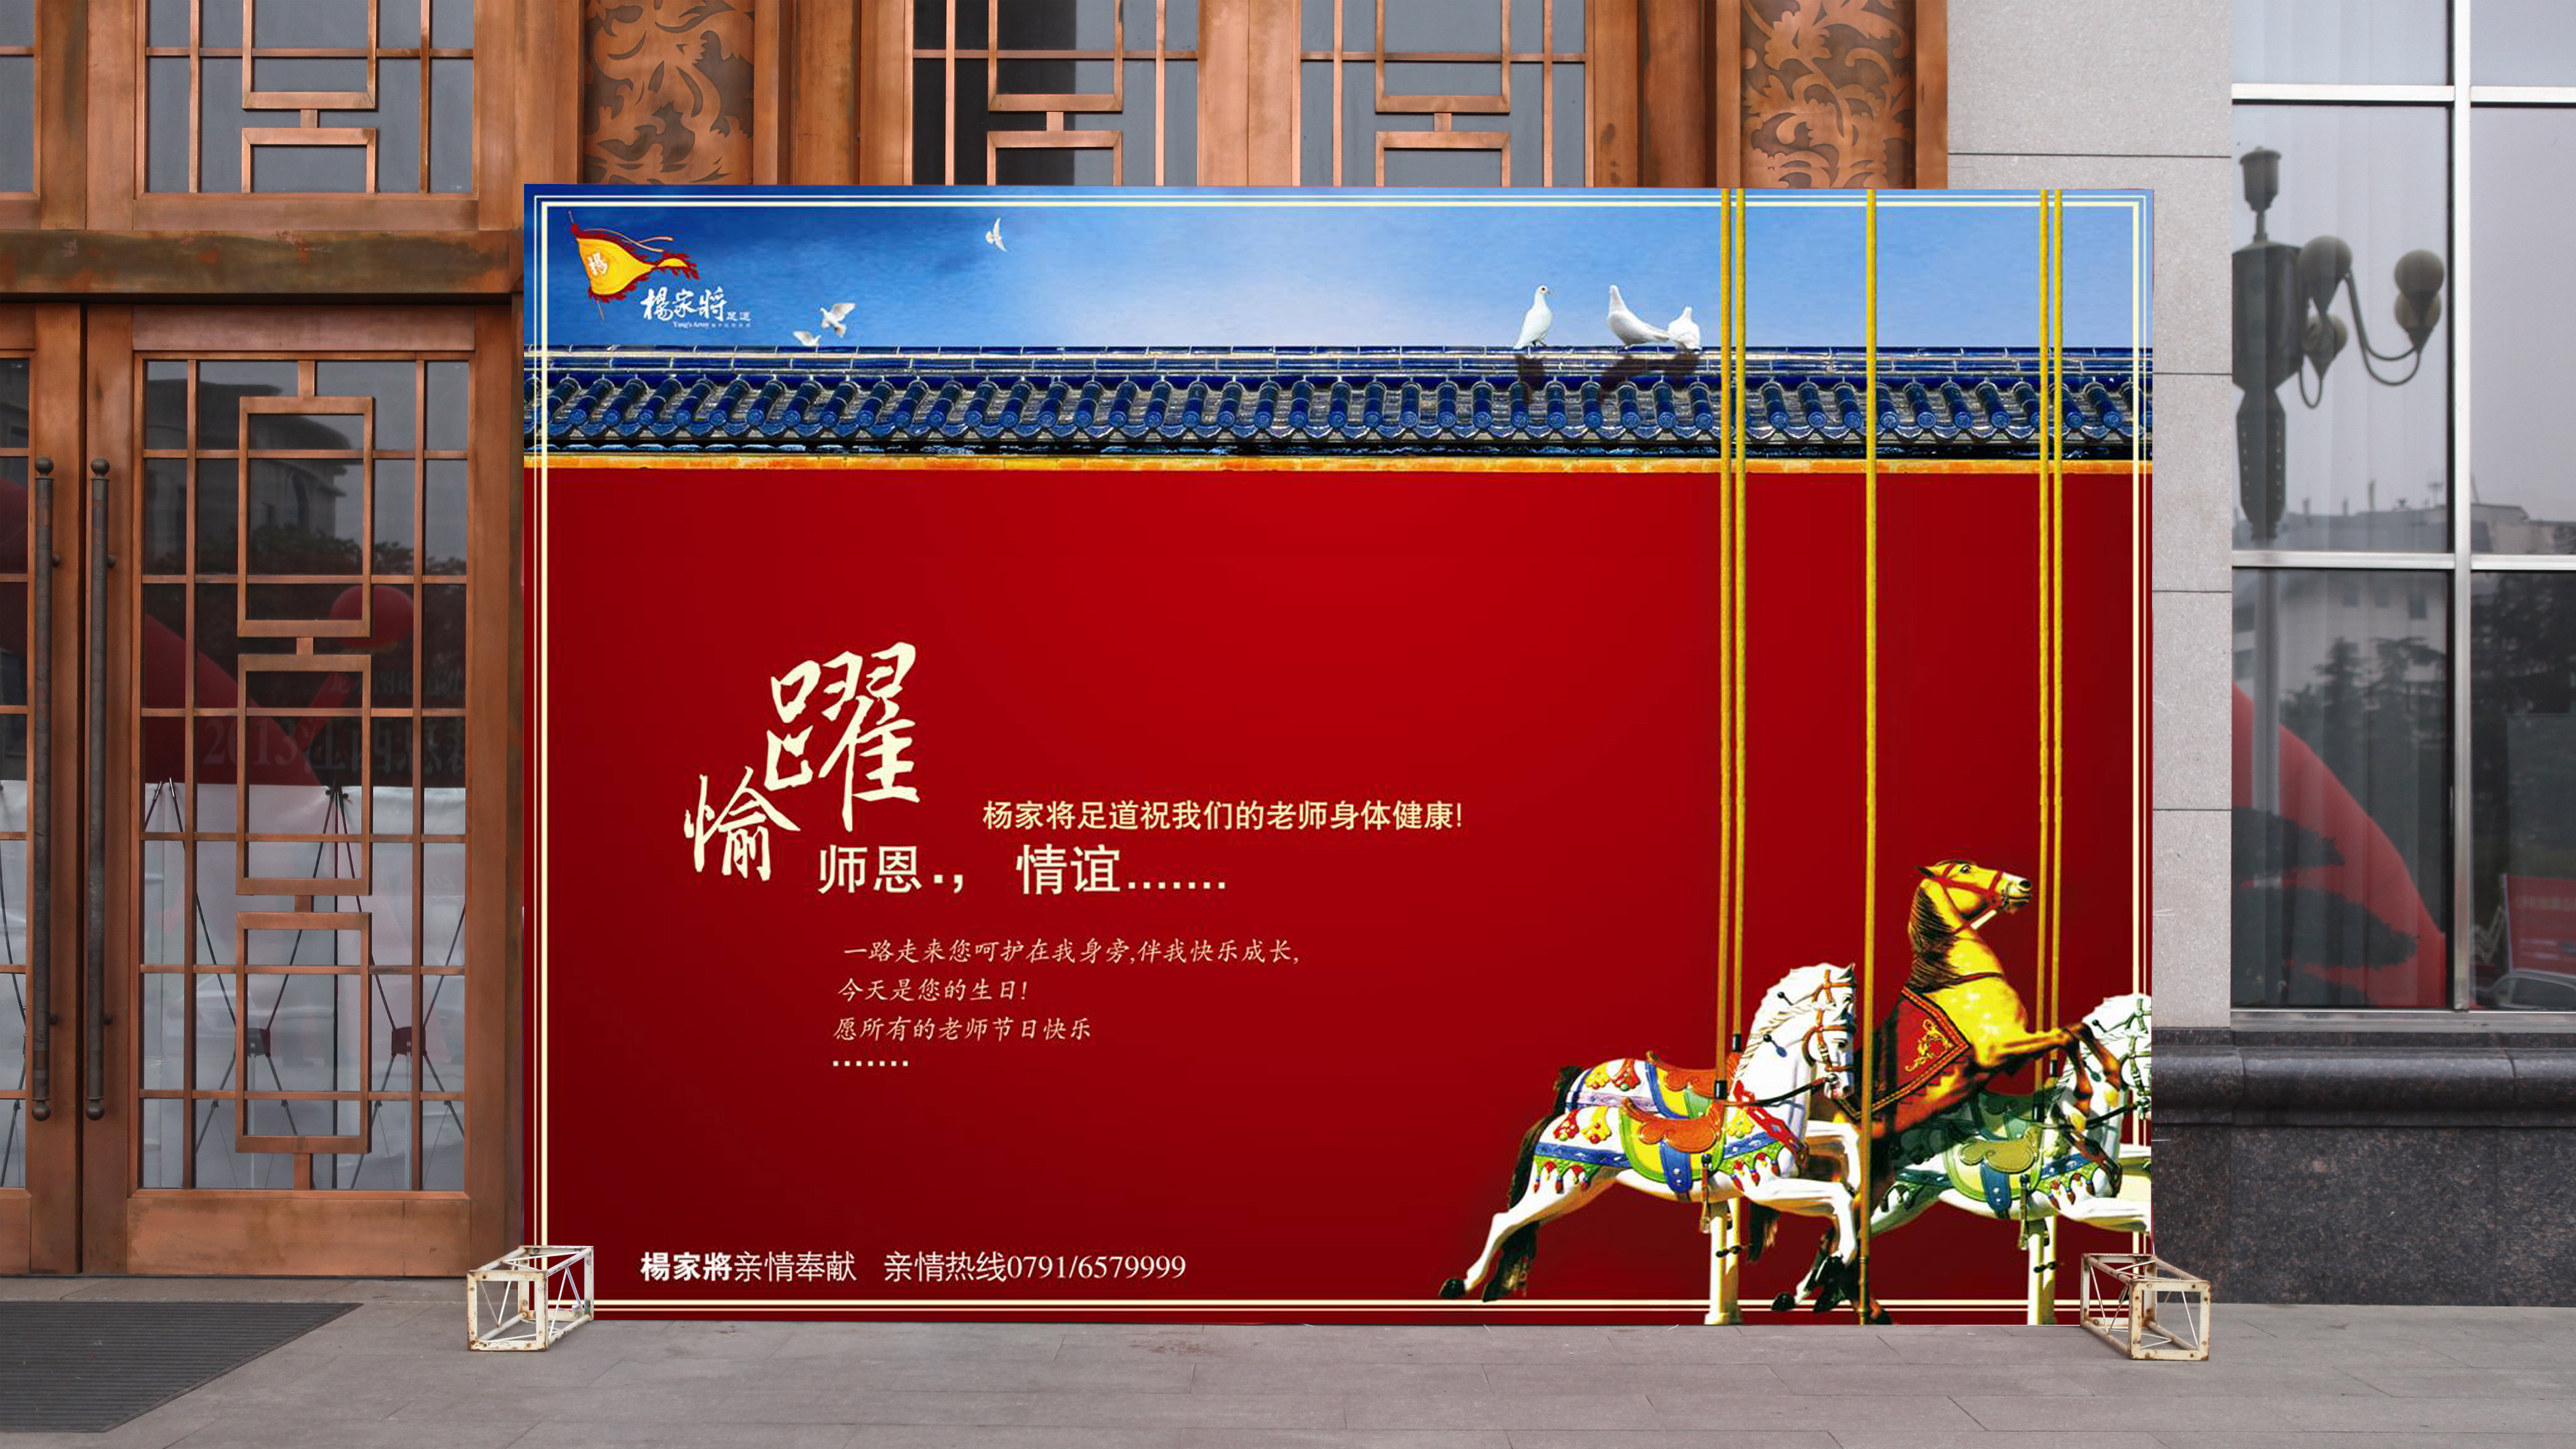 广州工业公共服务文化教育餐饮休闲食品饮料美容服装家居广告设计